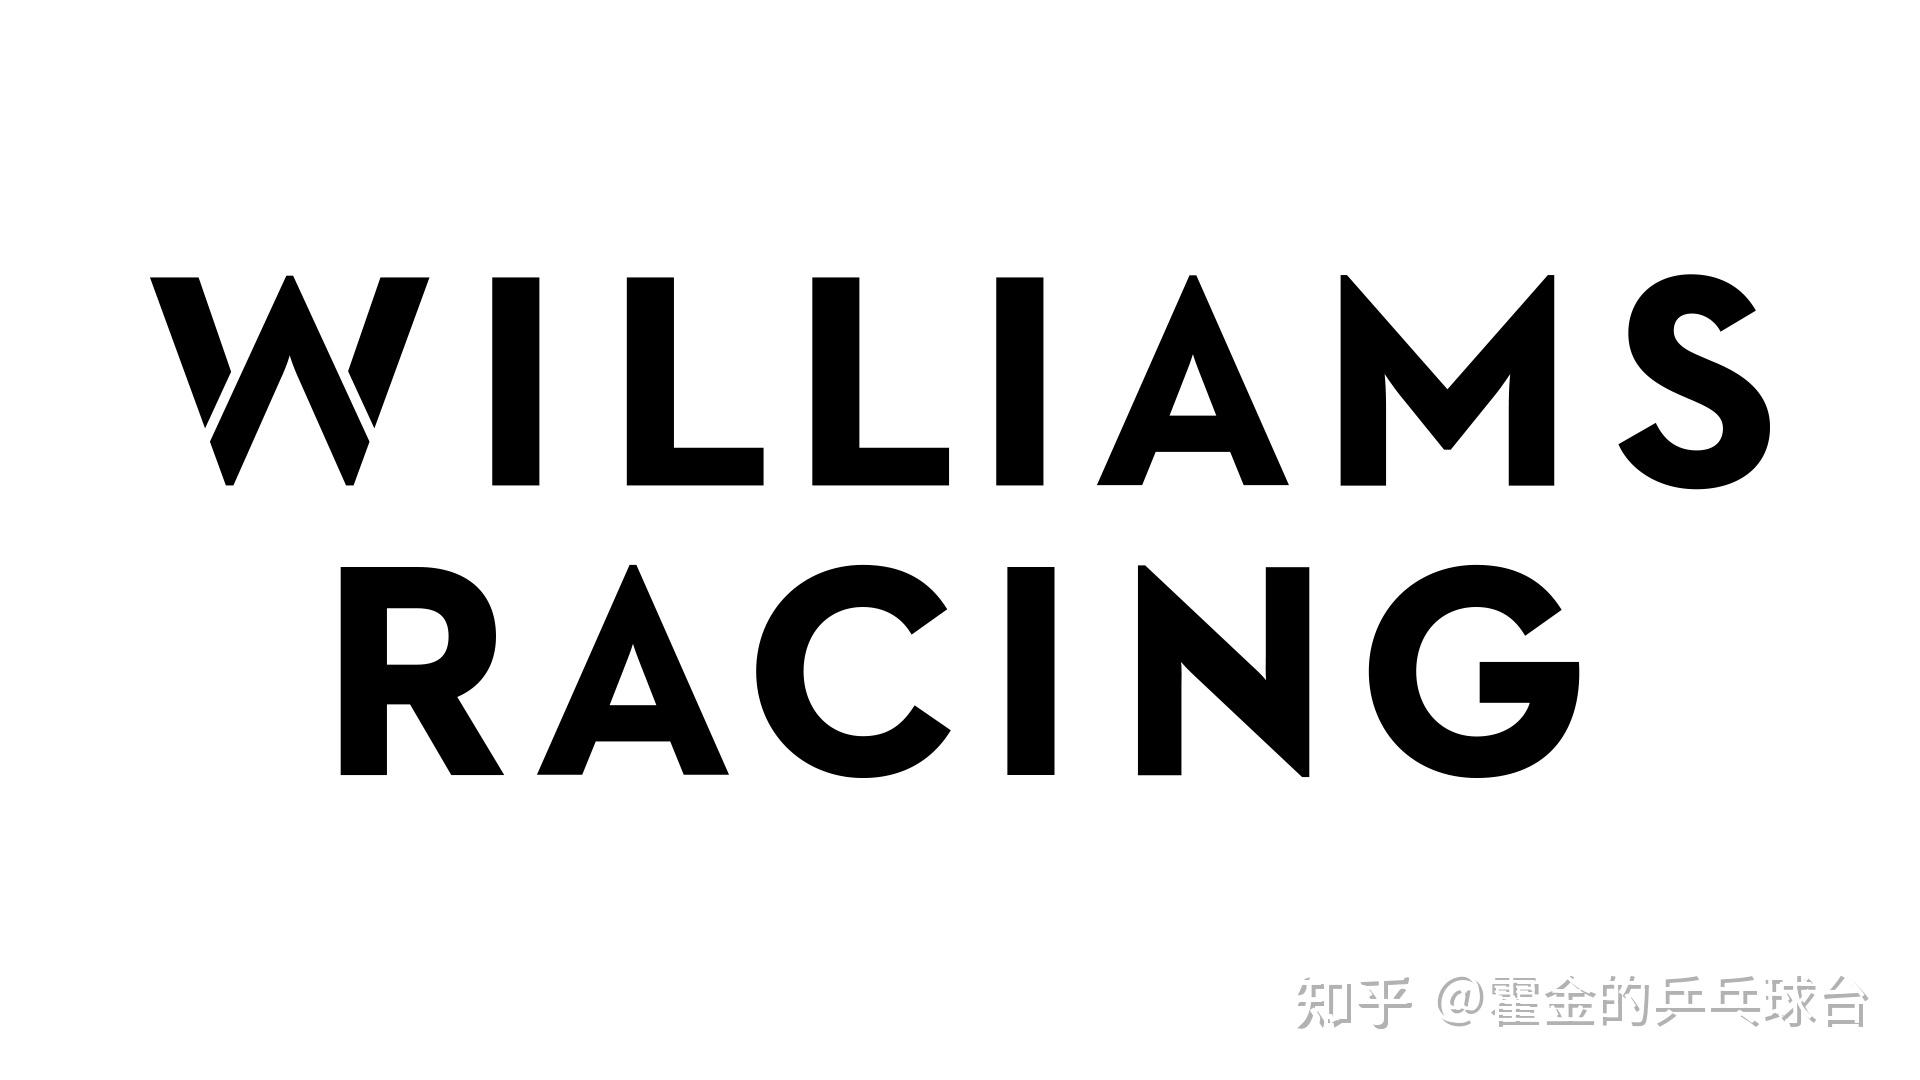 10 威廉姆斯车队注2:本文统计数据时,包括领奖台,分站赛冠军数两个